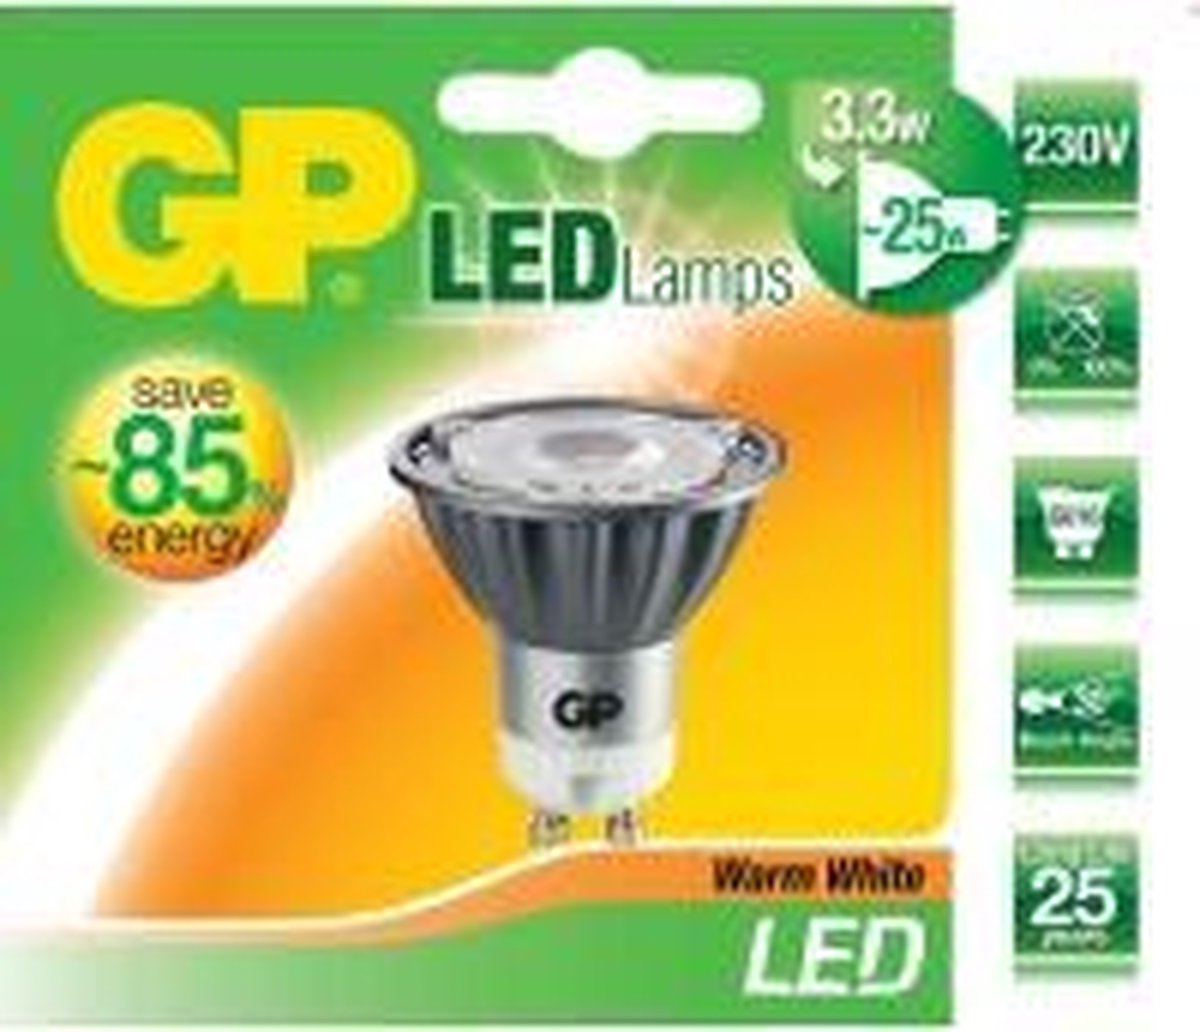 GP ledlamp 25 watt - 25 jaar verlichting